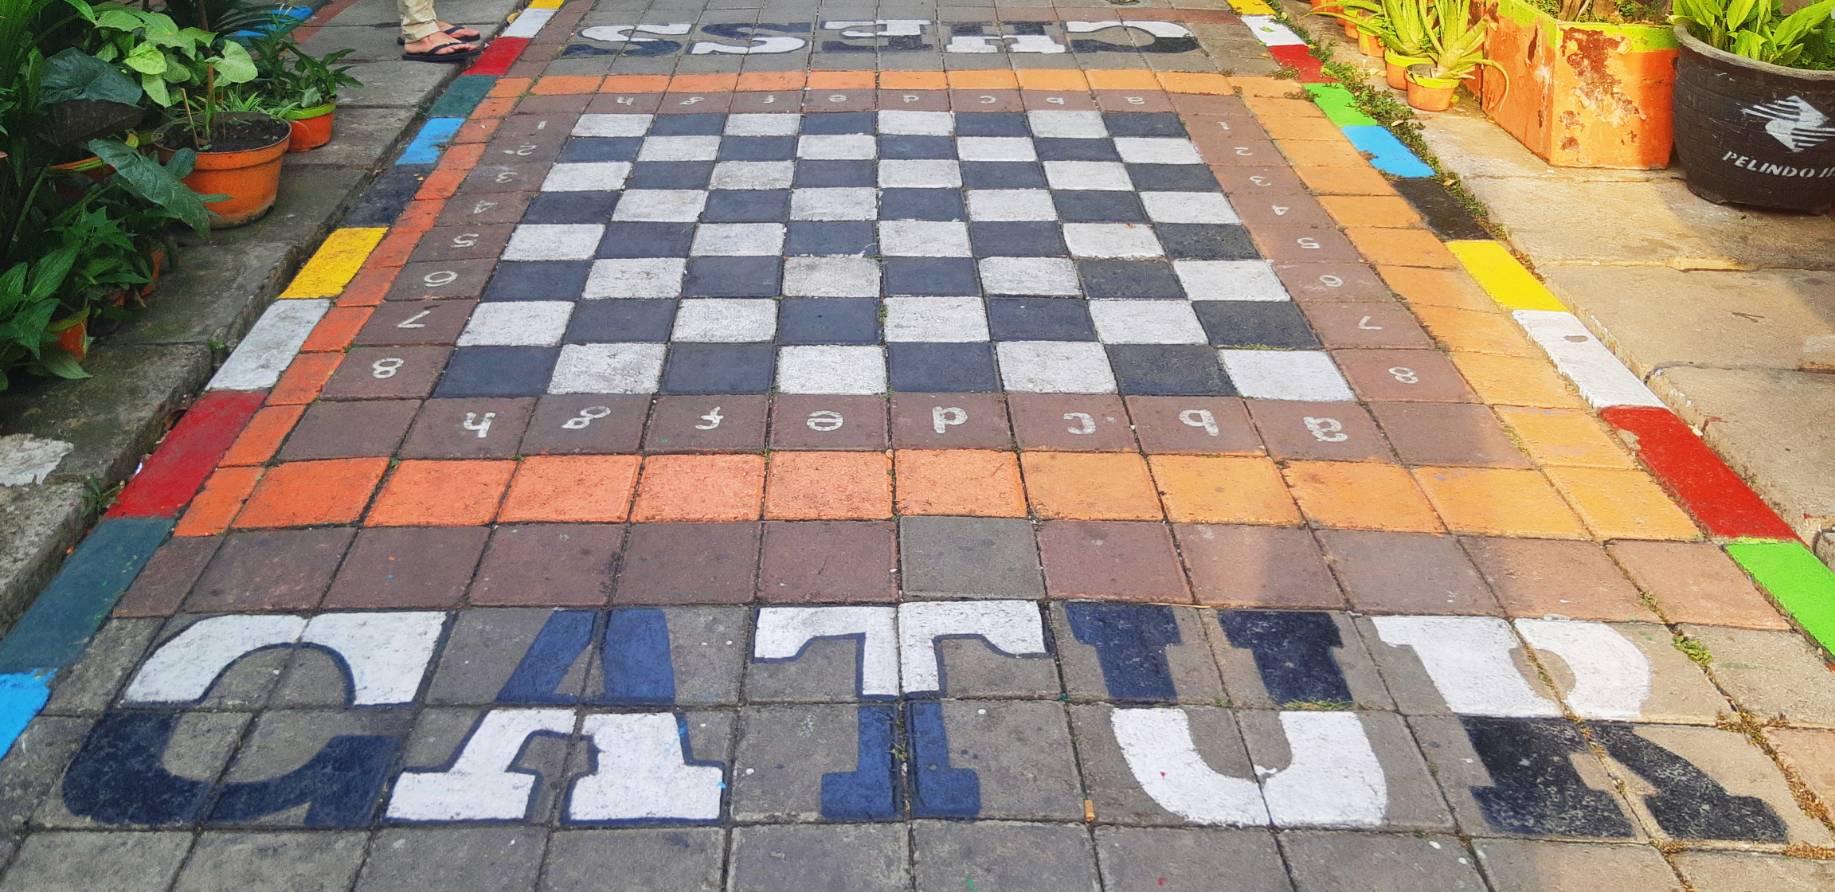 Sebuah papan permainan catur yang dibuat dalam bentuk lebih besar di lantai salah satu lorong di Kampung Lawas Maspati | Foto: Tara E.